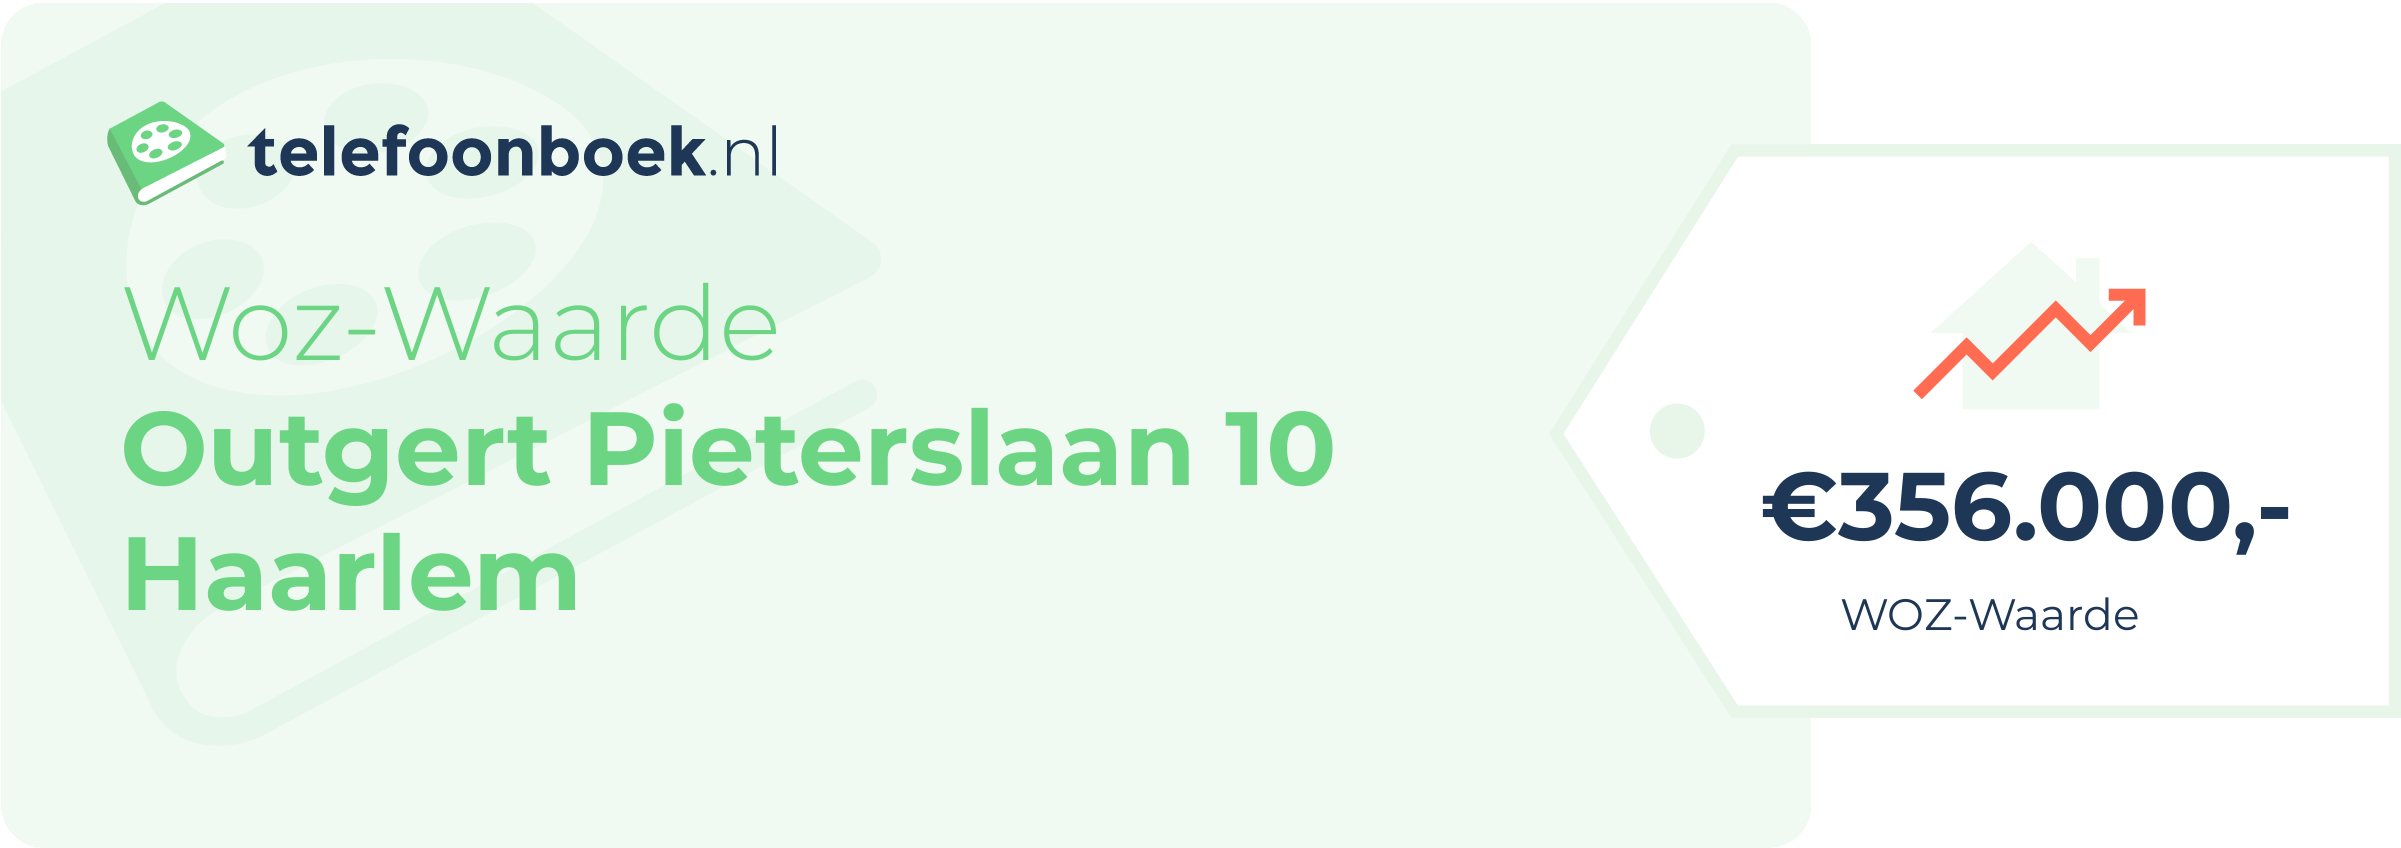 WOZ-waarde Outgert Pieterslaan 10 Haarlem